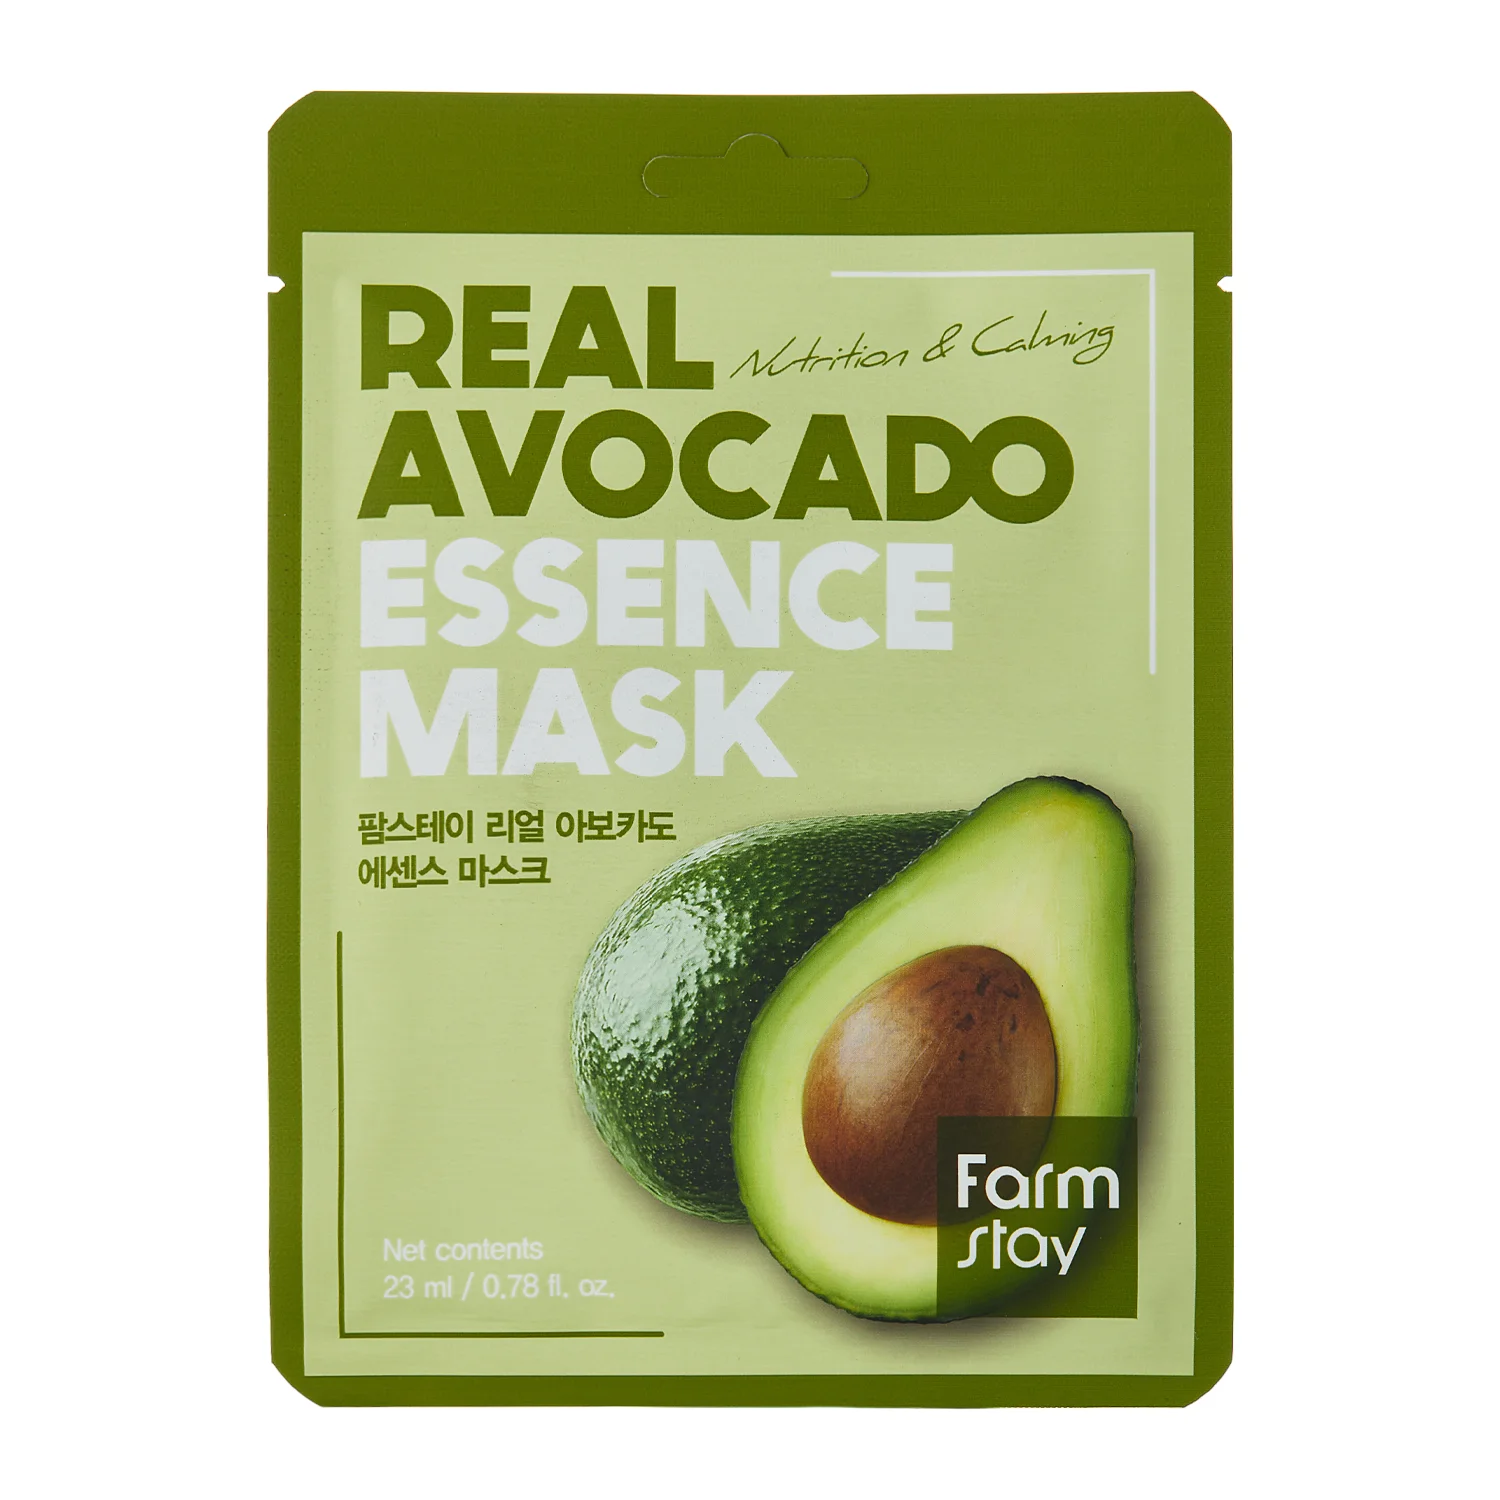 Farmstay - Real Avocado Essence Mask - Живильно-заспокійлива тканинна маска з екстрактом авокадо - 23ml/1шт.